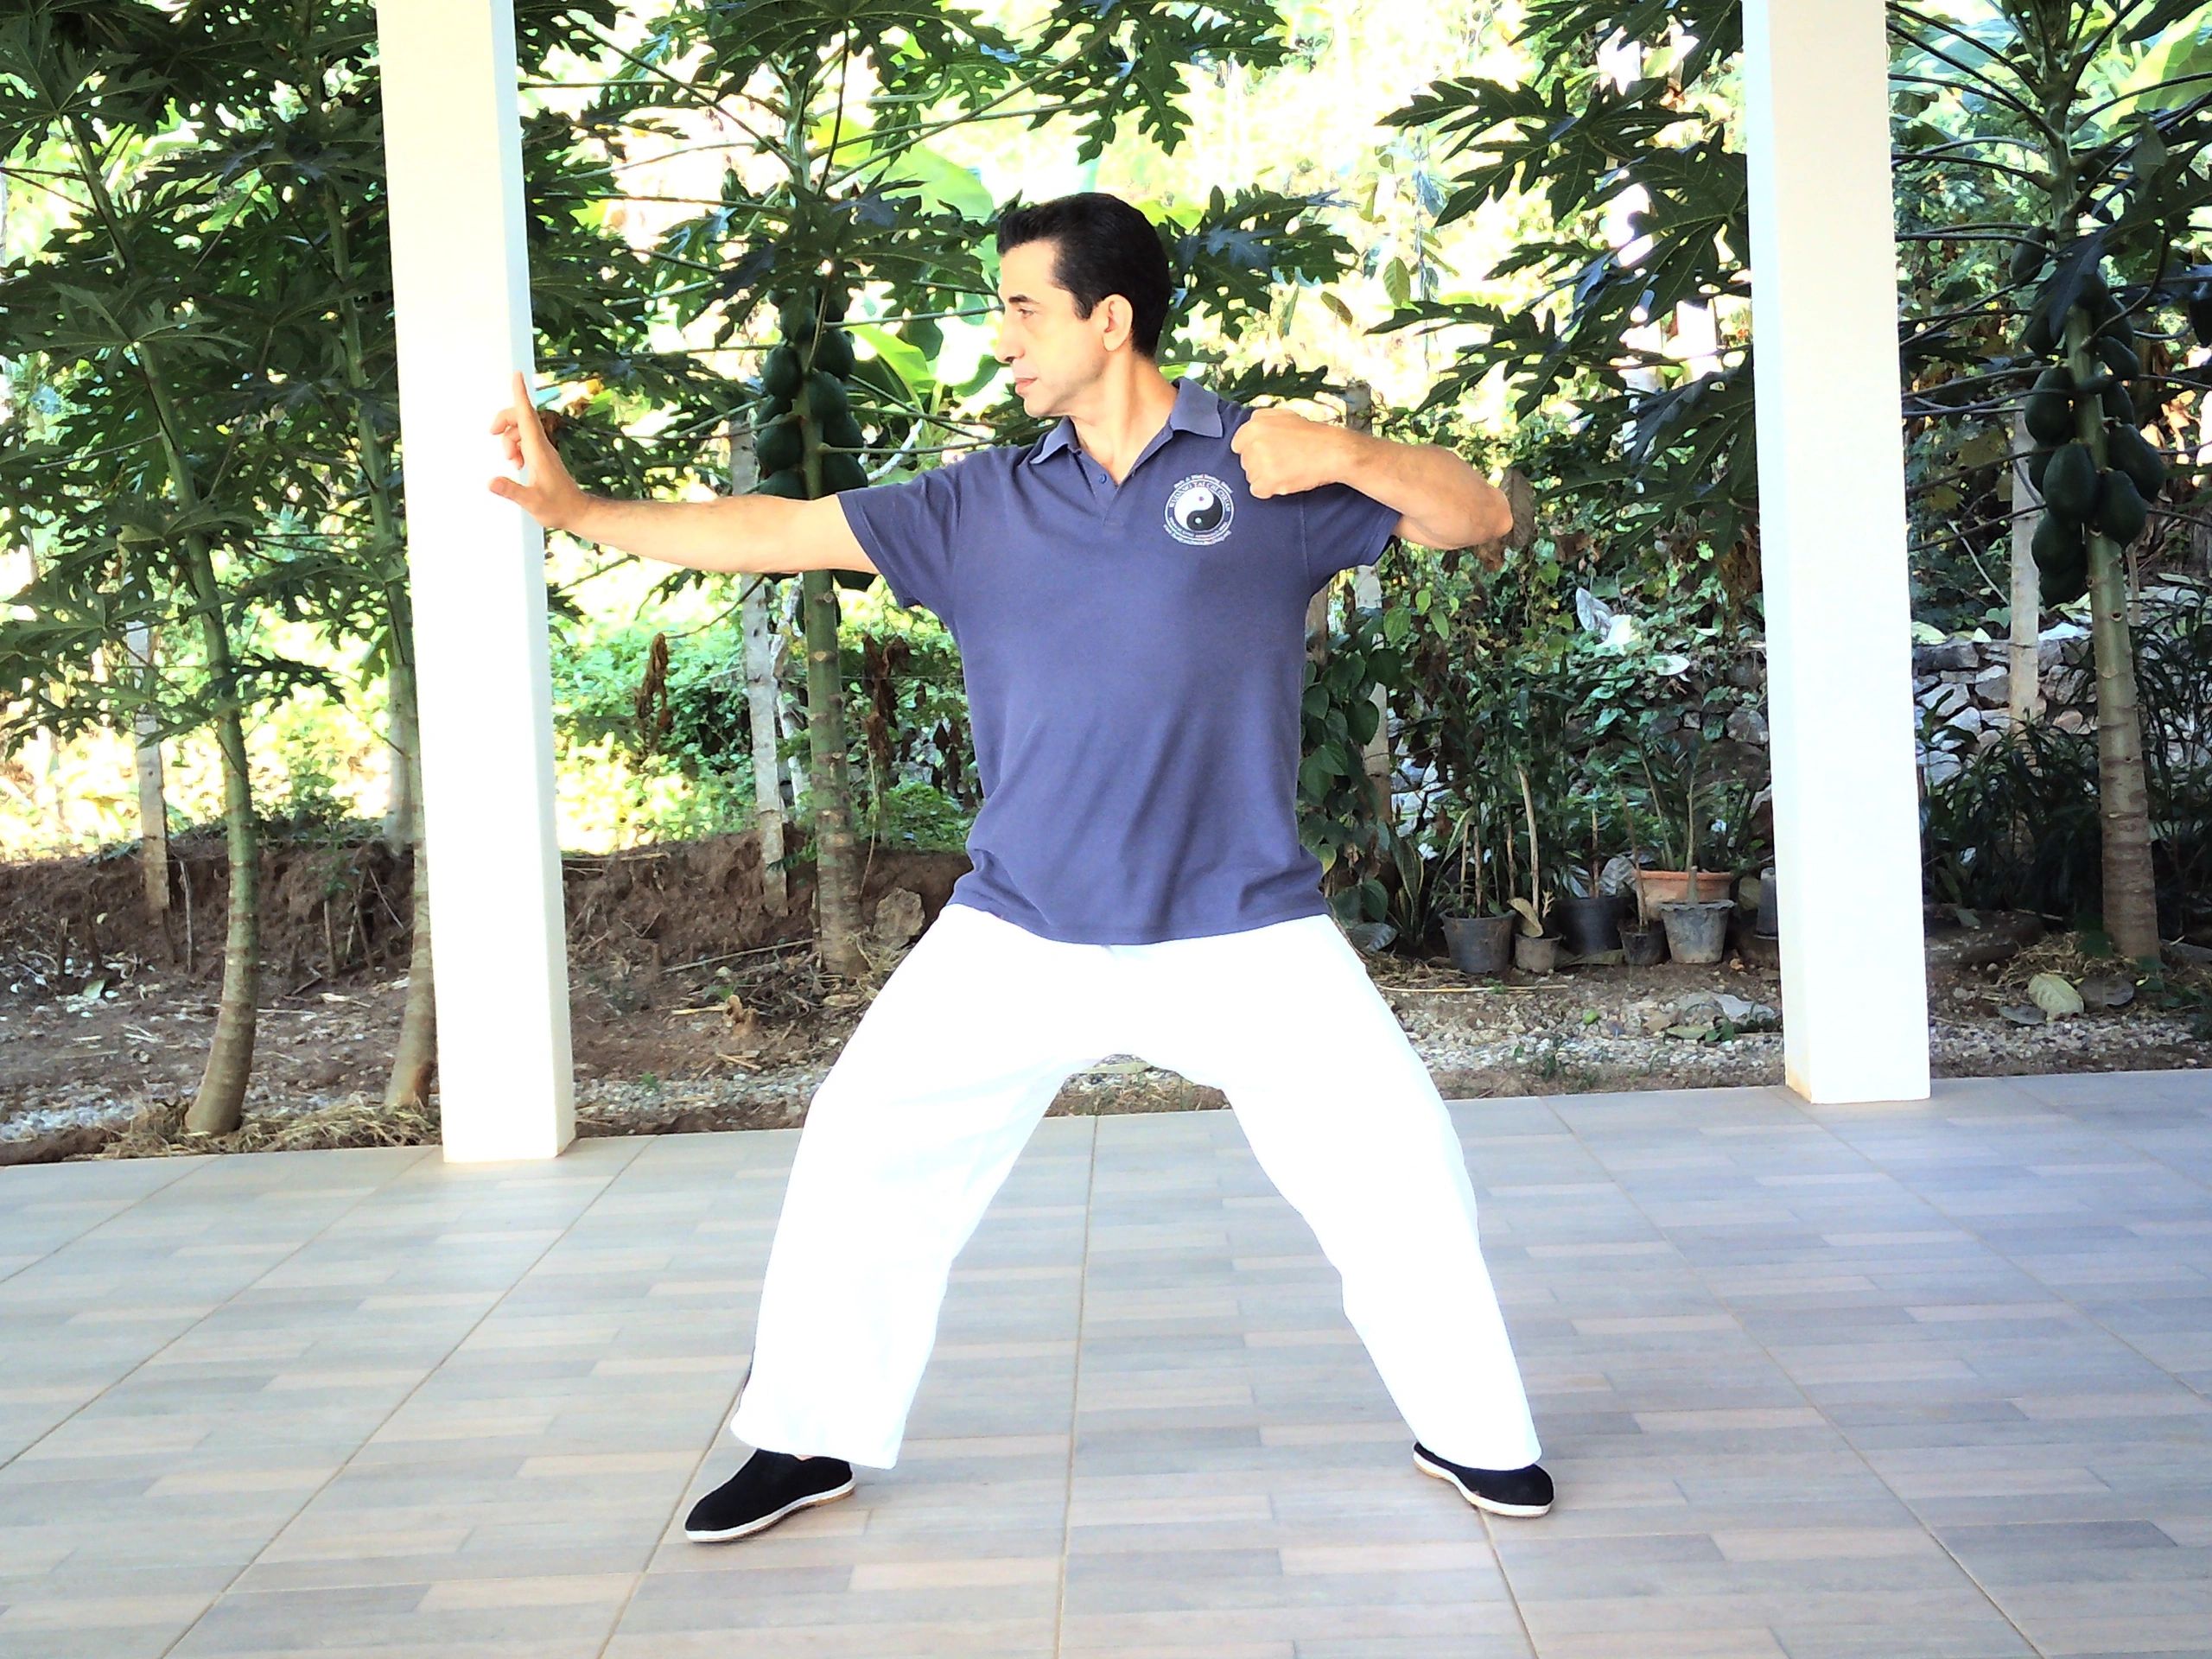 Qigong at Body and Mind Healing Chiang Mai Thailand. Chi Kung Healing 5 Day courses.